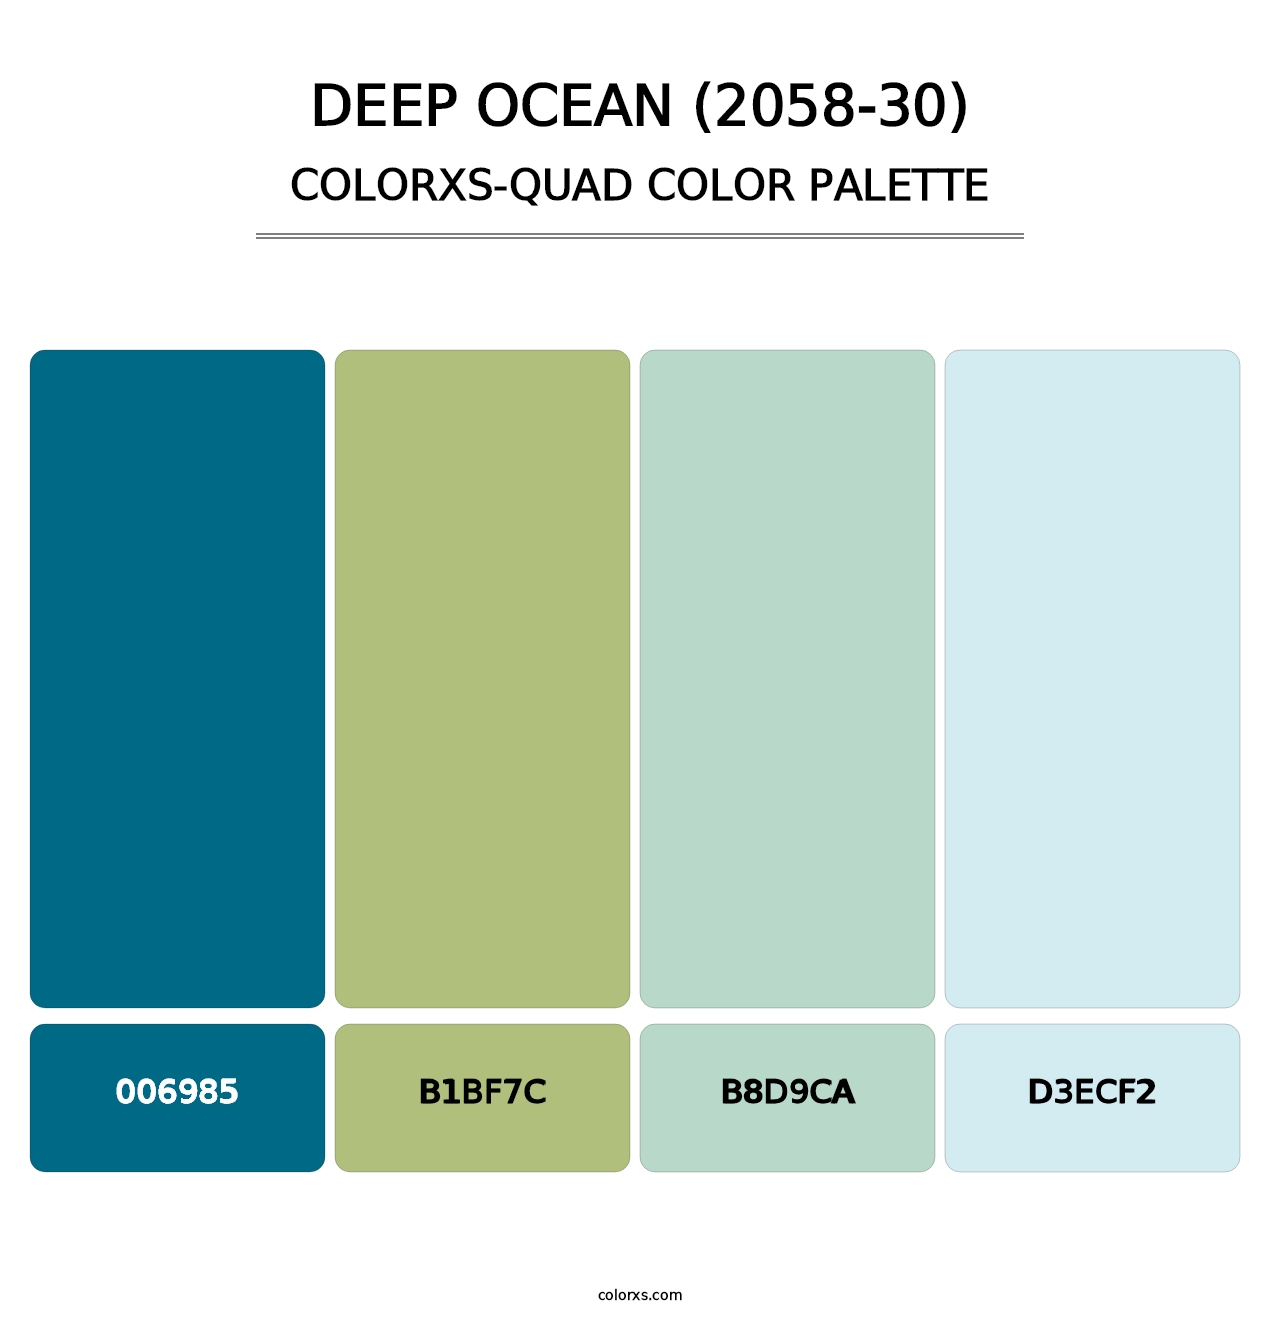 Deep Ocean (2058-30) - Colorxs Quad Palette